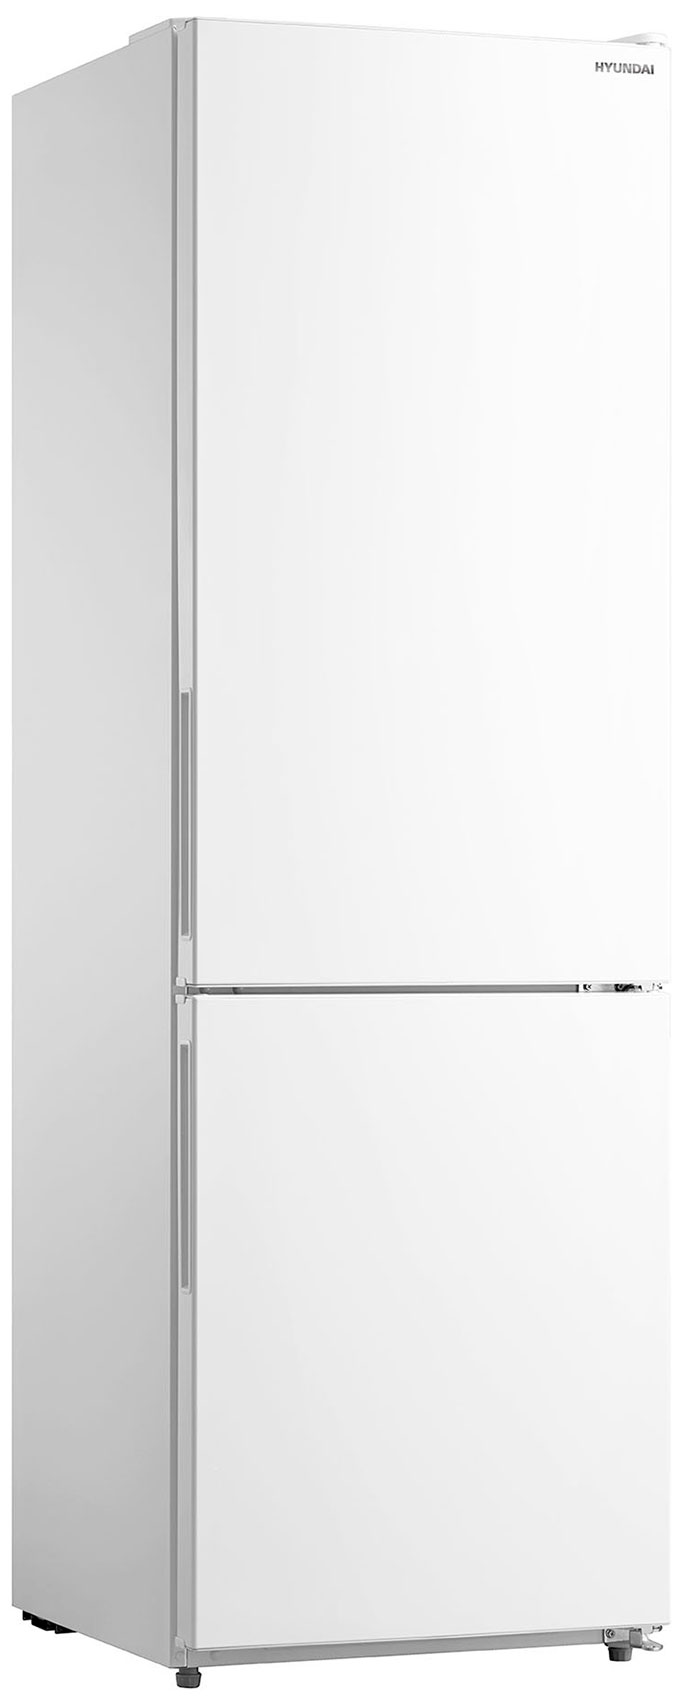 Двухкамерный холодильник Hyundai CC3093FWT белый холодильник hyundai cc3091lwt белый двухкамерный